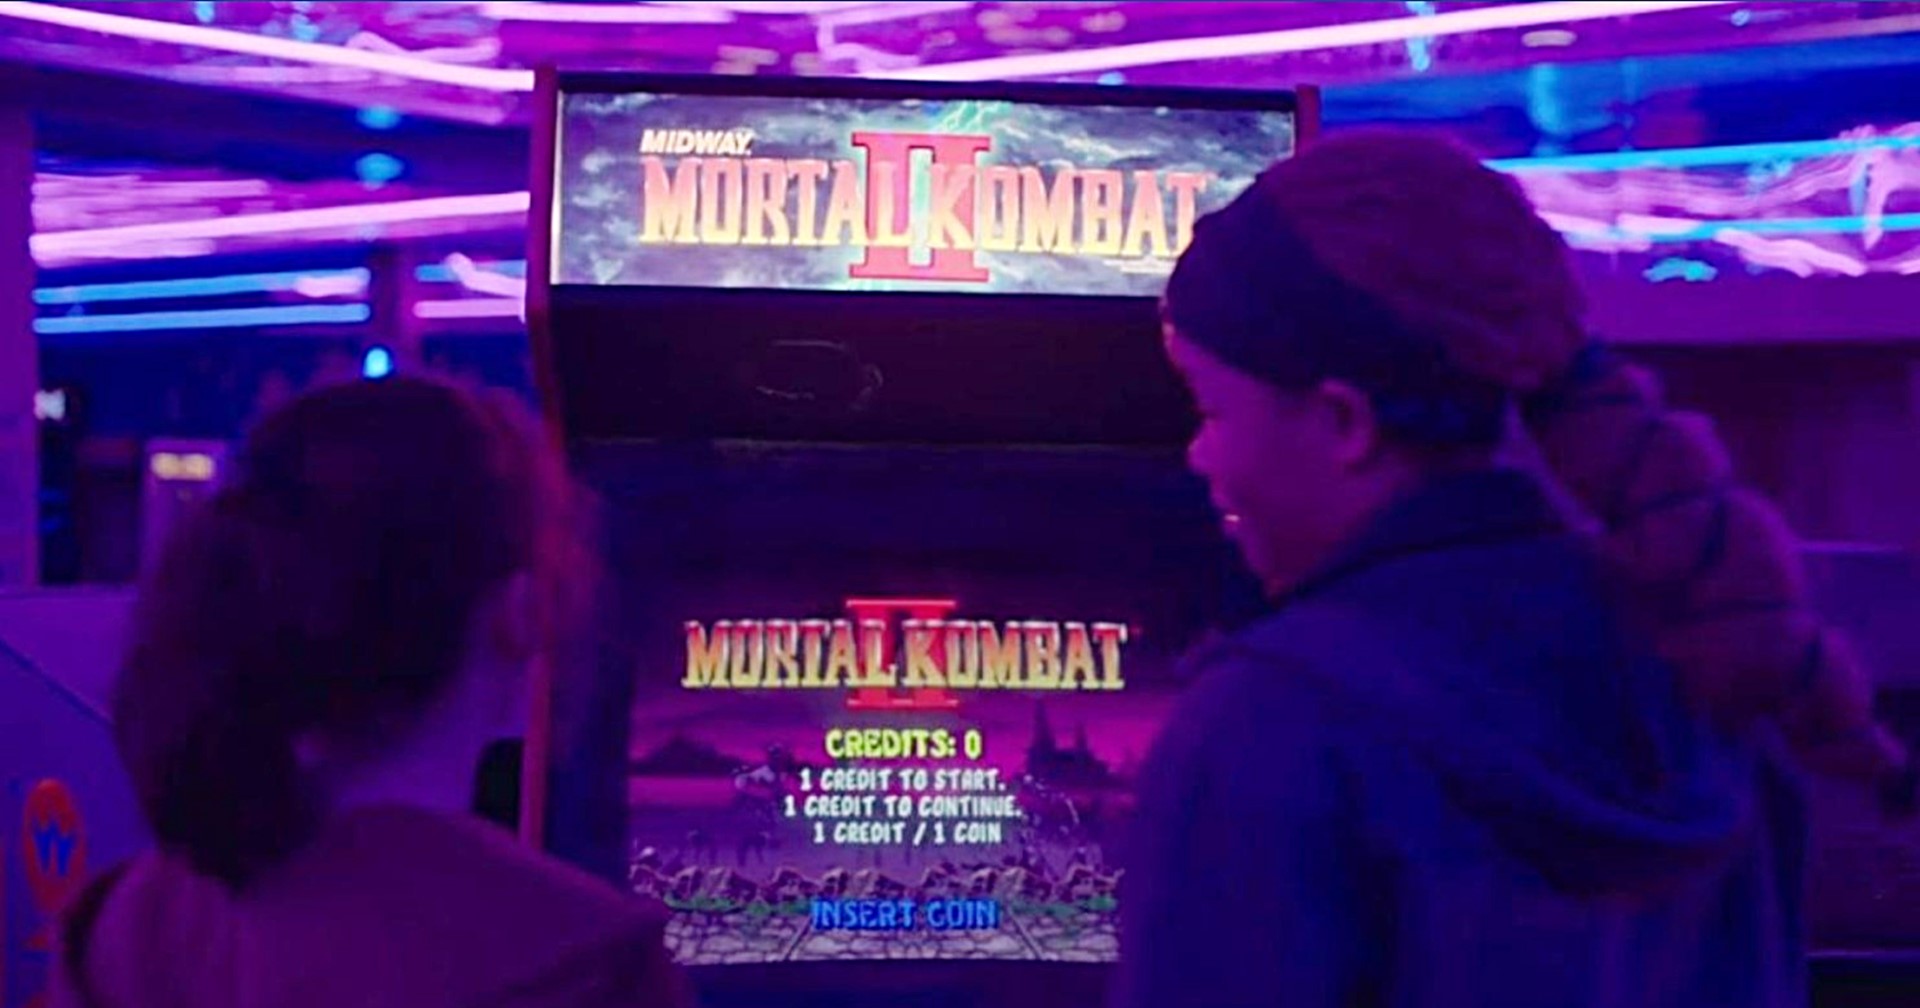 ผู้สร้าง Mortal Kombat พูดถึงฉากเล่นเกมในซีรีส์ The Last Of Us